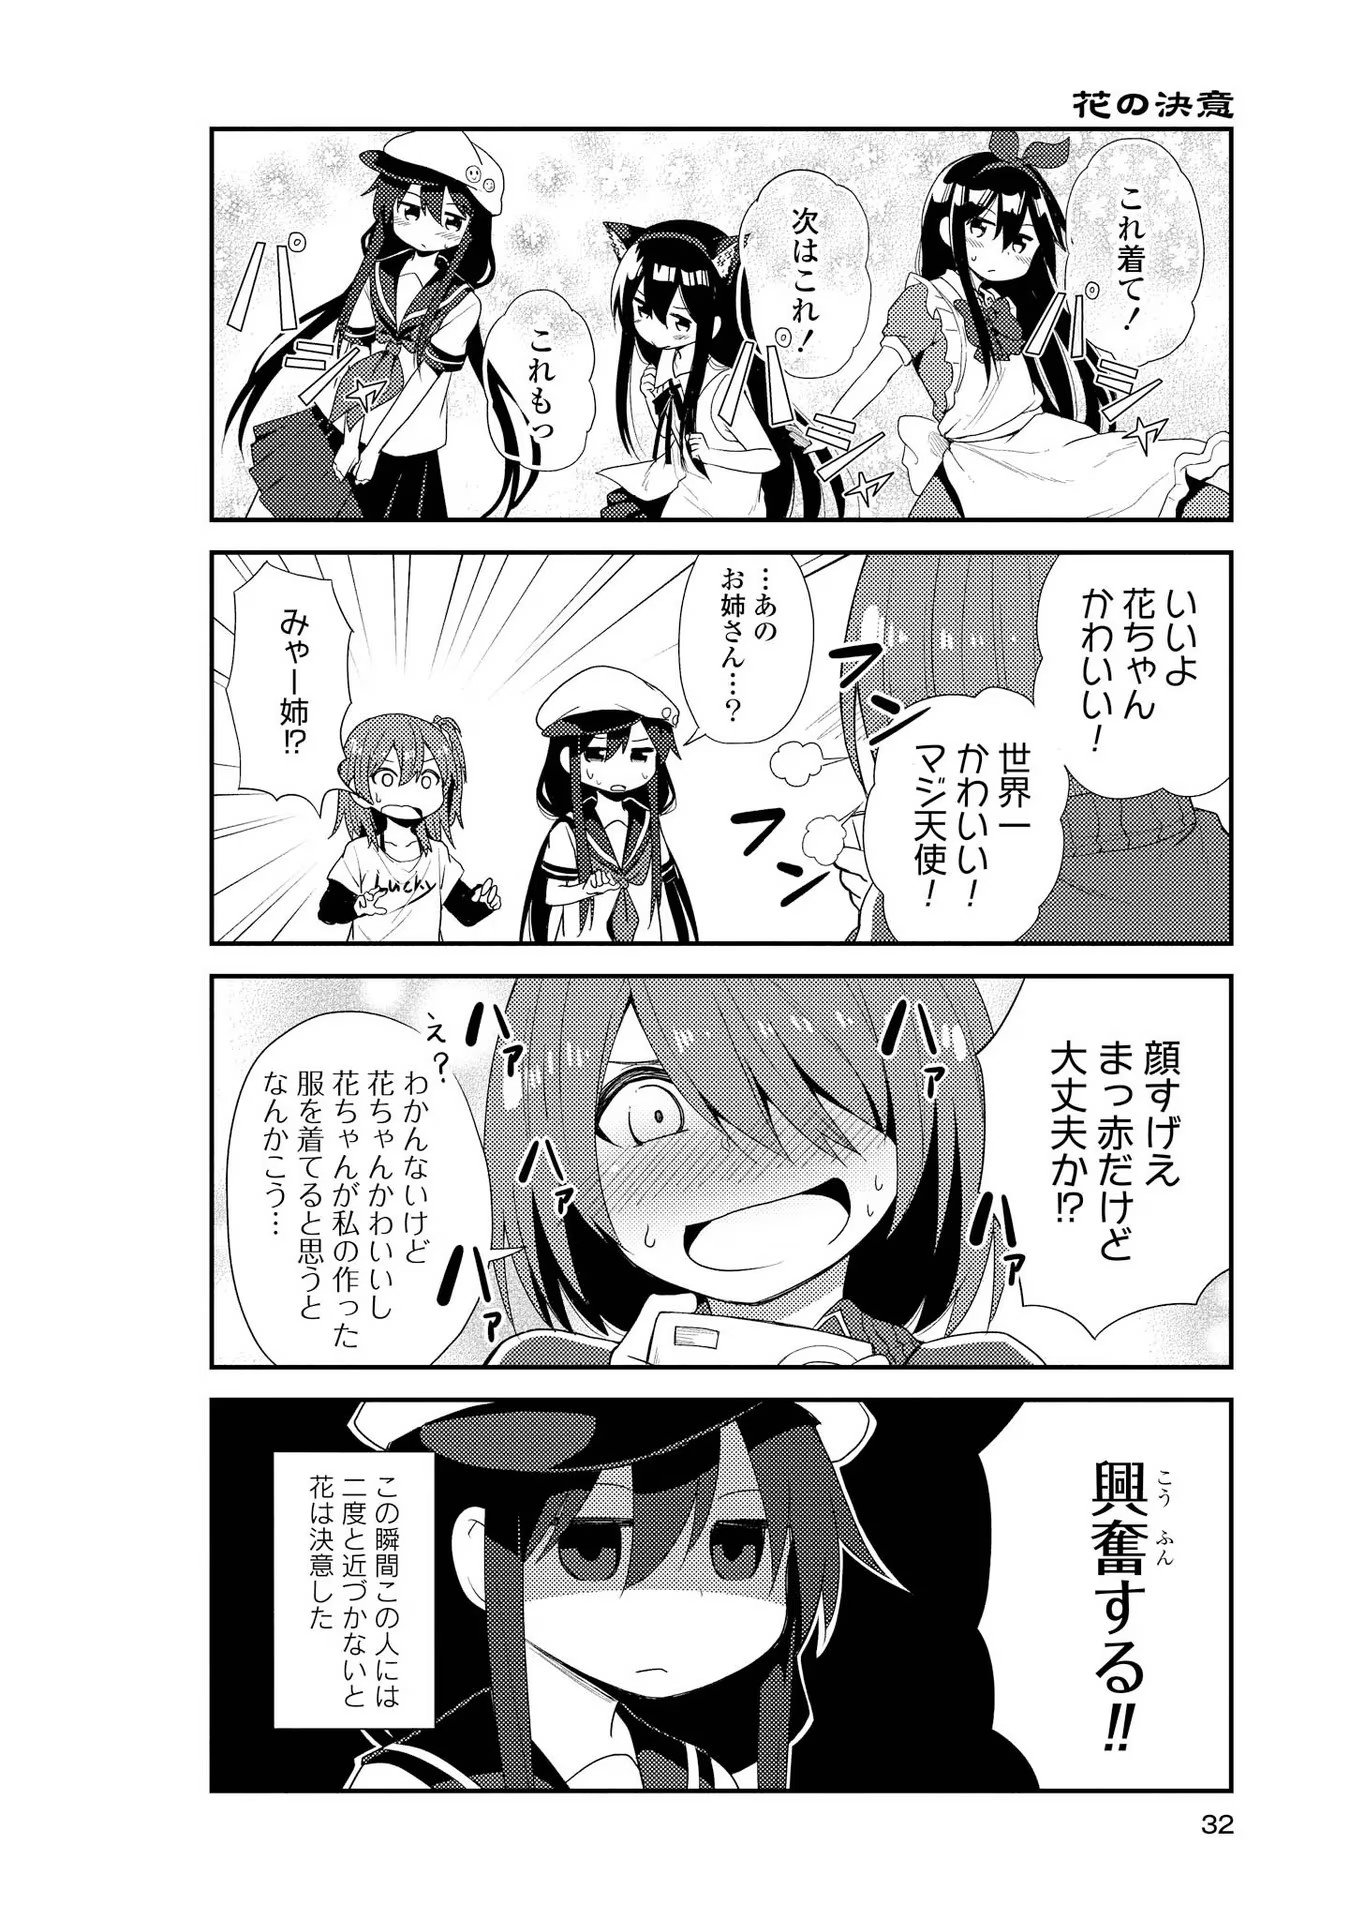 Watashi ni Tenshi ga Maiorita! - Chapter 2 - Page 12